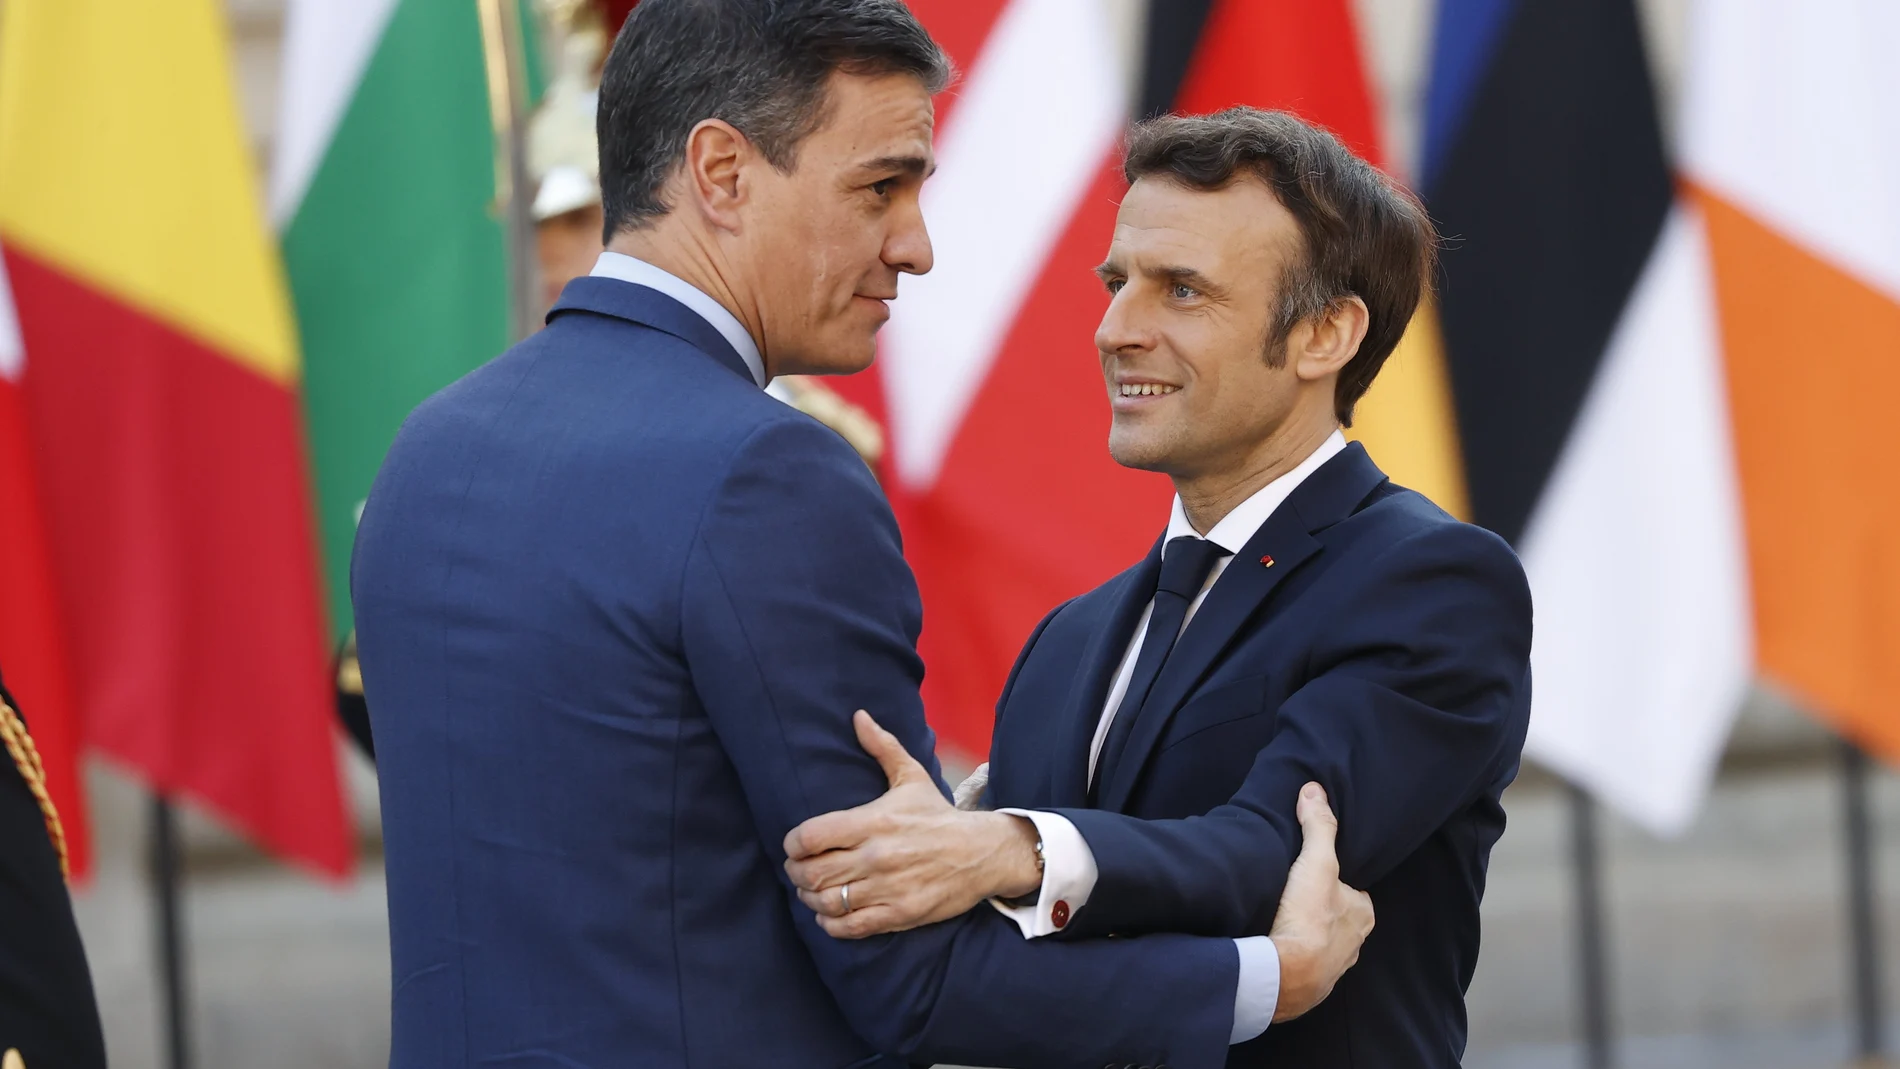 El presidente francés Emmanuel Macron (d) saluda al presidente español, Pedro Sánchez (i) en una imagen de archivo